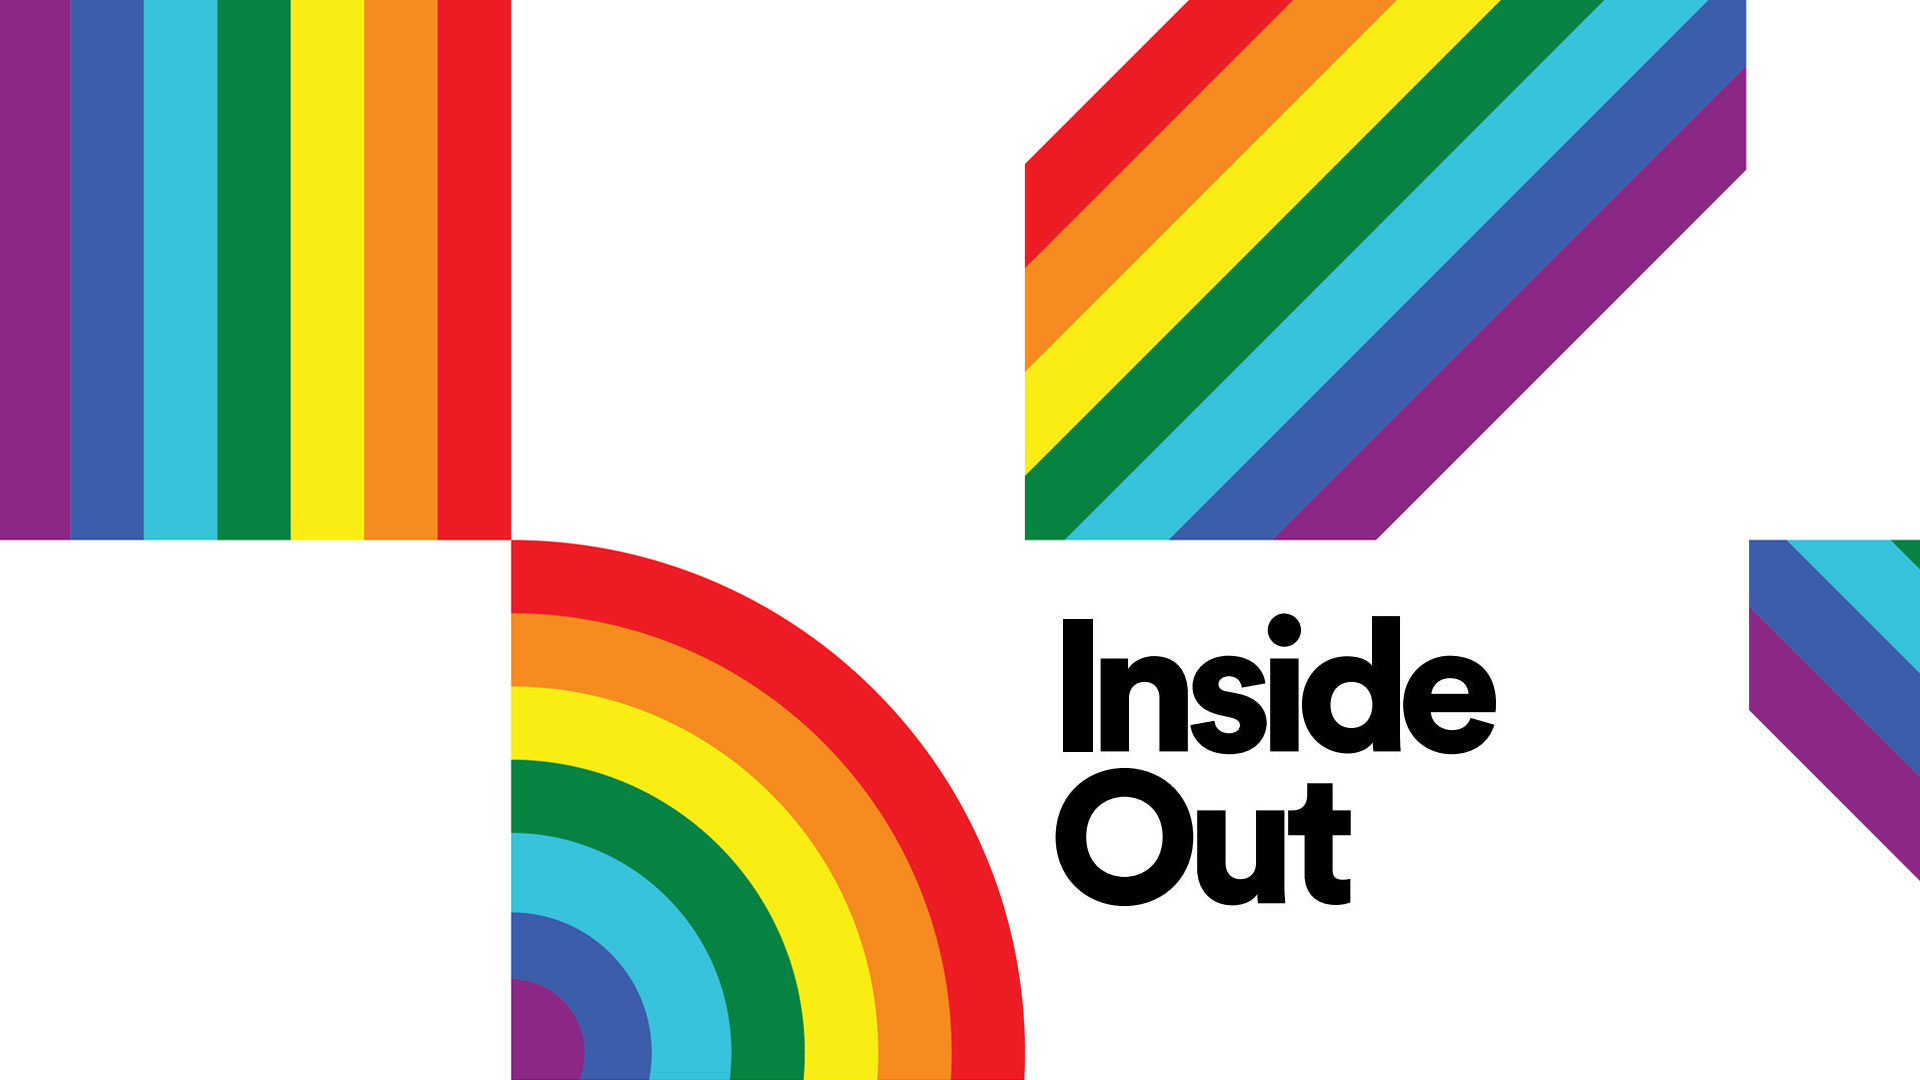 Inside Out Toronto LGBT Film Festival 2016: Paris 05:59: Theo & Hugo